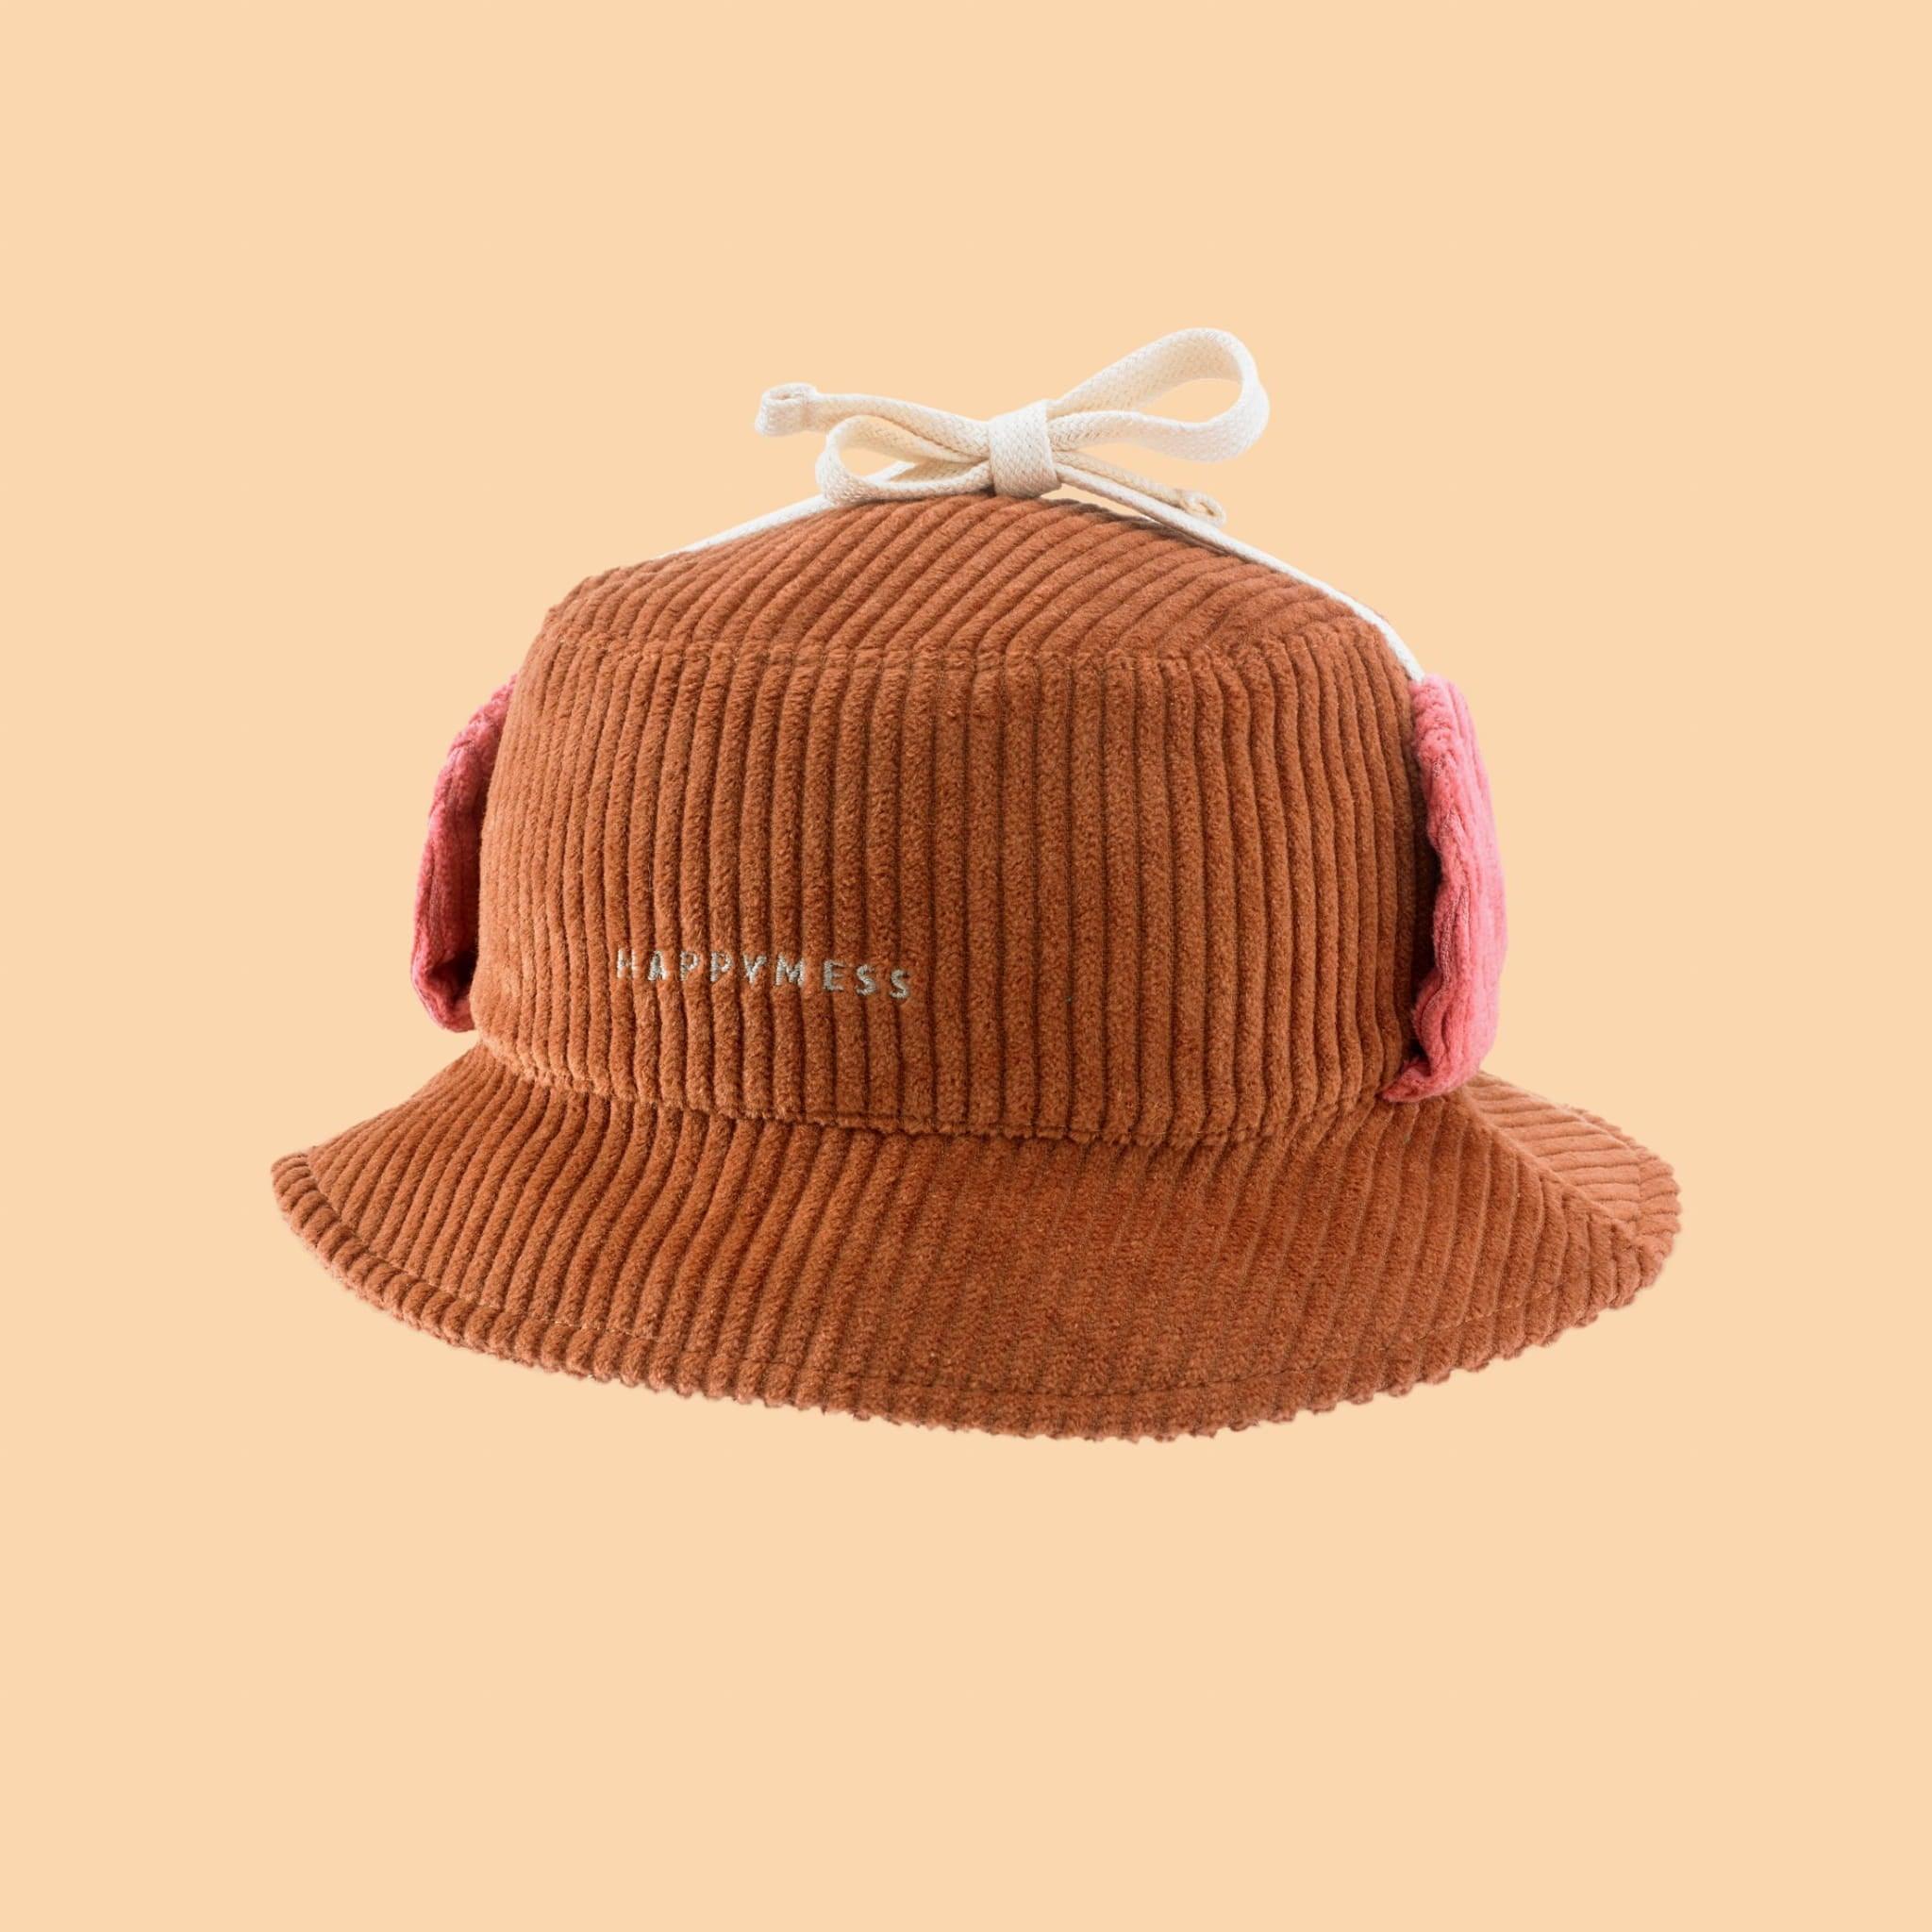 Happymess: kapelusz sztruksowy Bucket Hat - Noski Noski